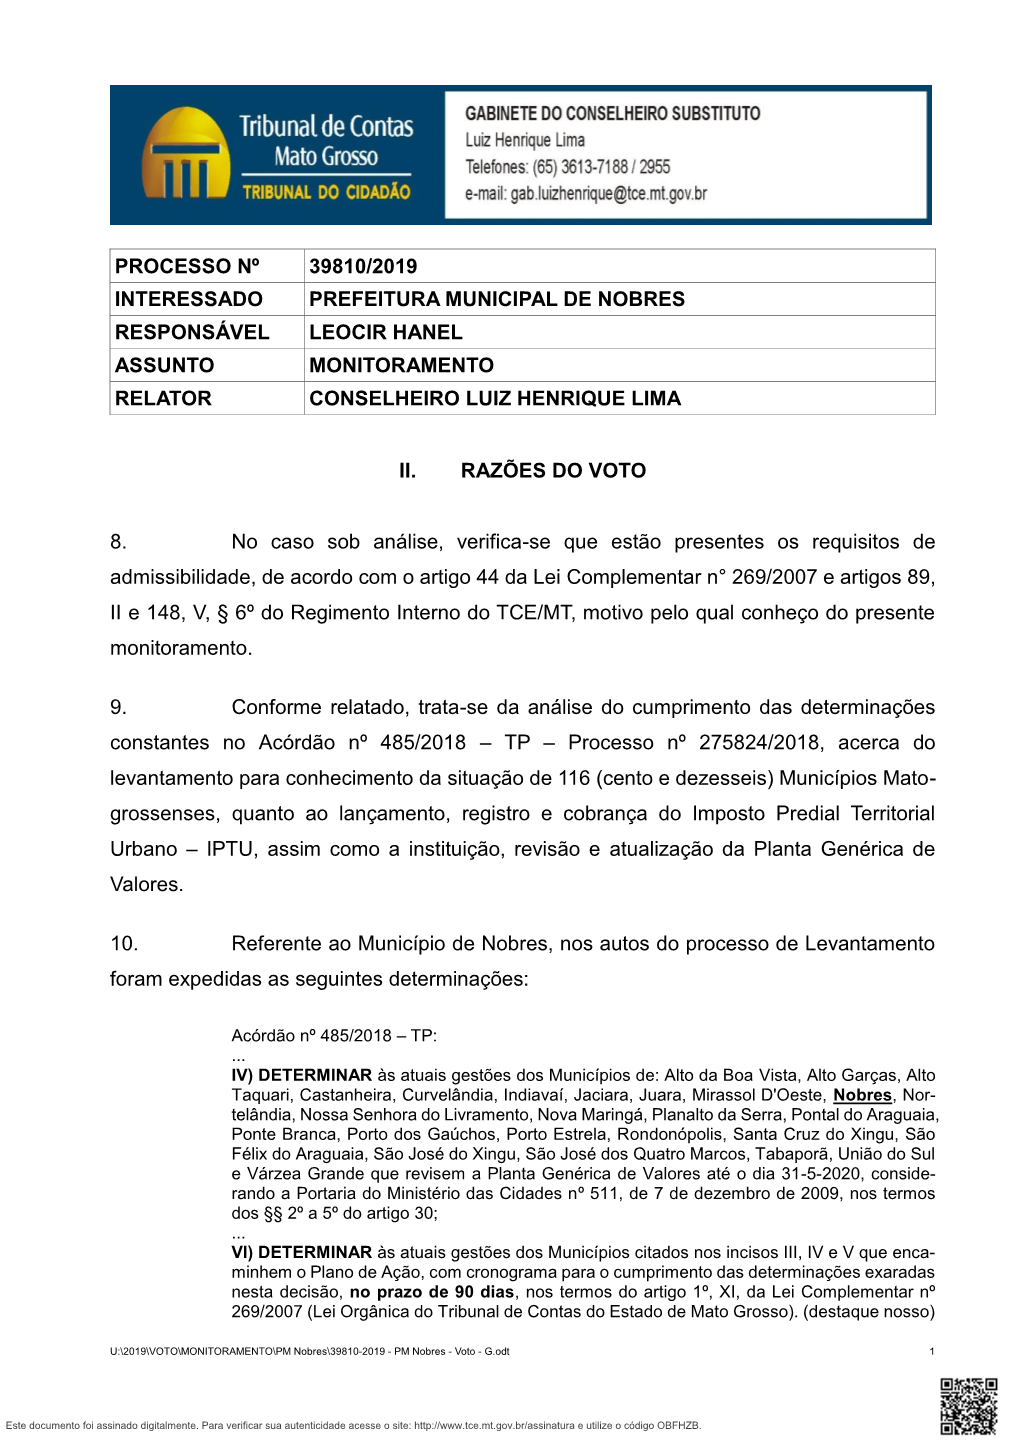 Processo Nº 39810/2019 Interessado Prefeitura Municipal De Nobres Responsável Leocir Hanel Assunto Monitoramento Relator Conselheiro Luiz Henrique Lima